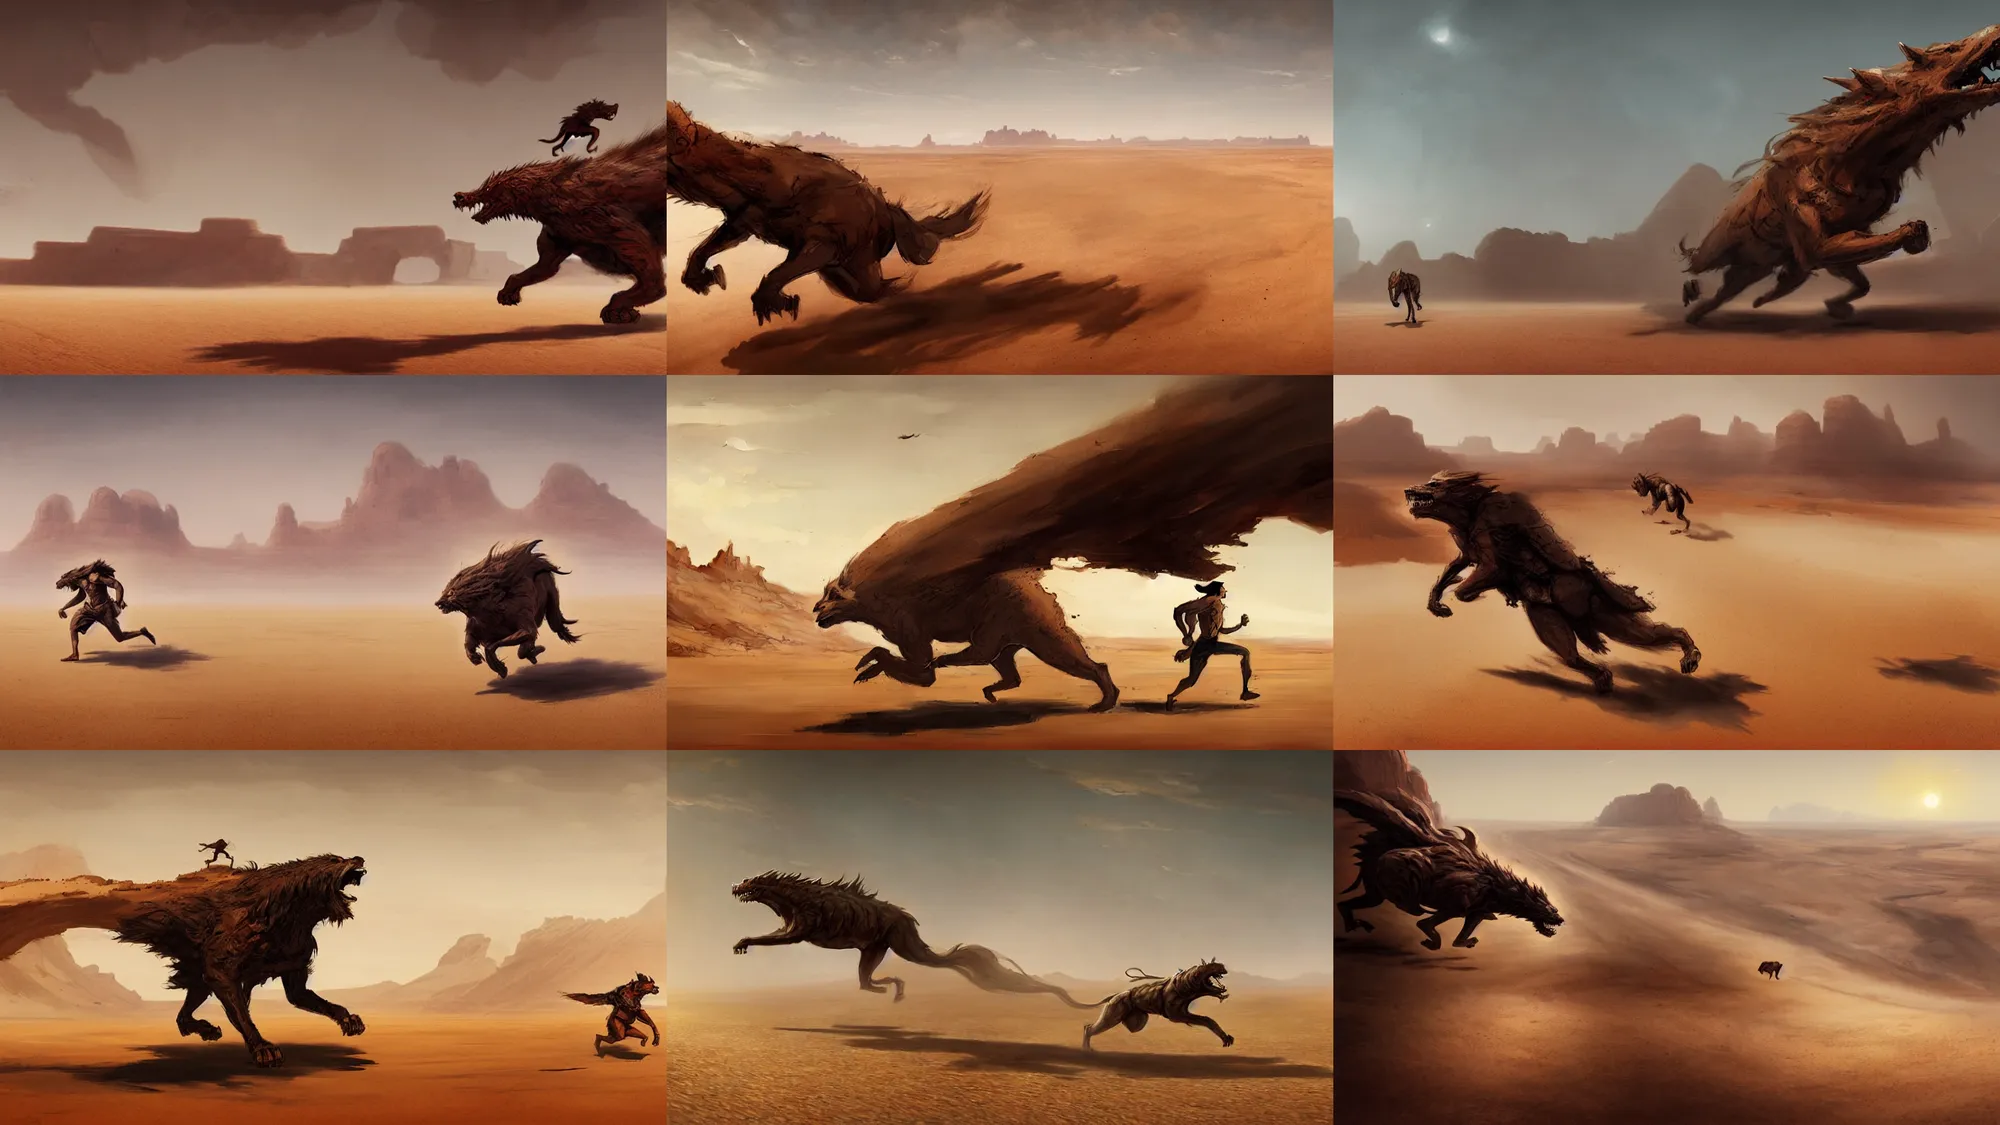 Prompt: beast running across the open desert, empty desert, sand, karst landscape, wide shot, concept art by greg rutkowski